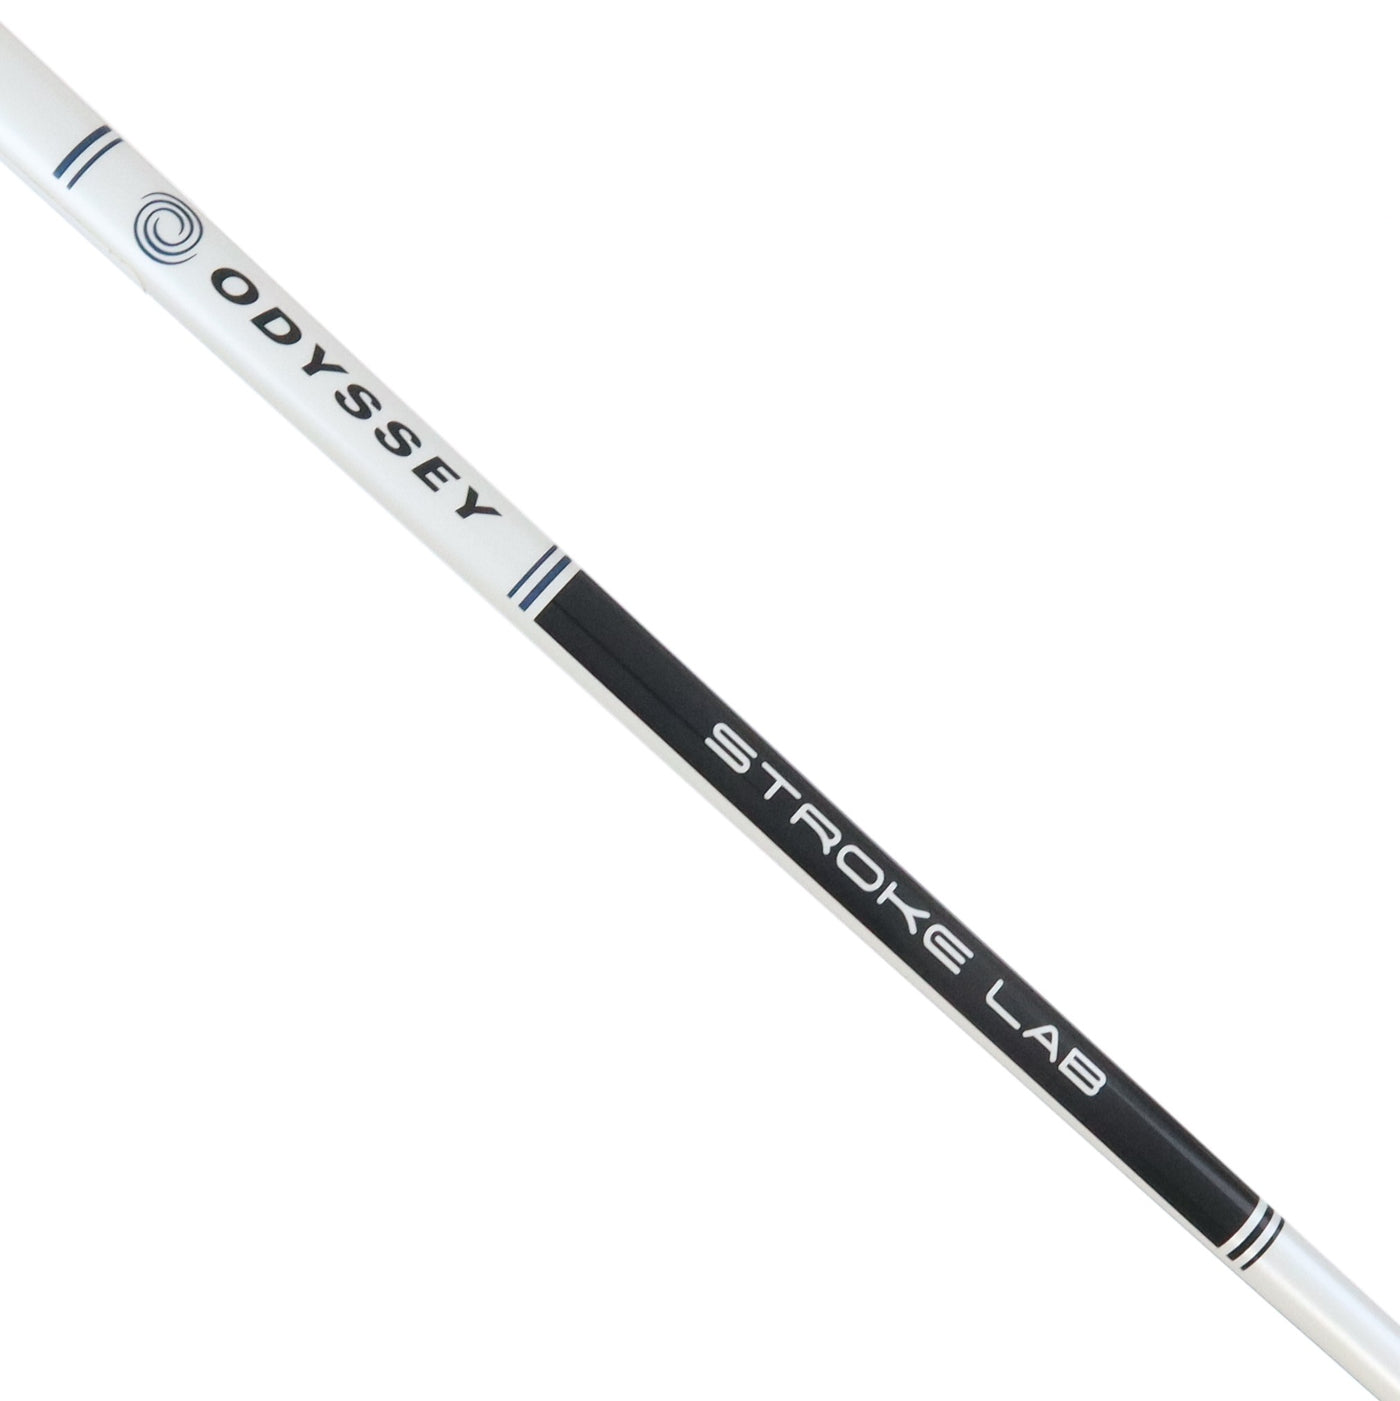 Odyssey Putter Brand New WHITE HOT OG 2-BALL 32 inch